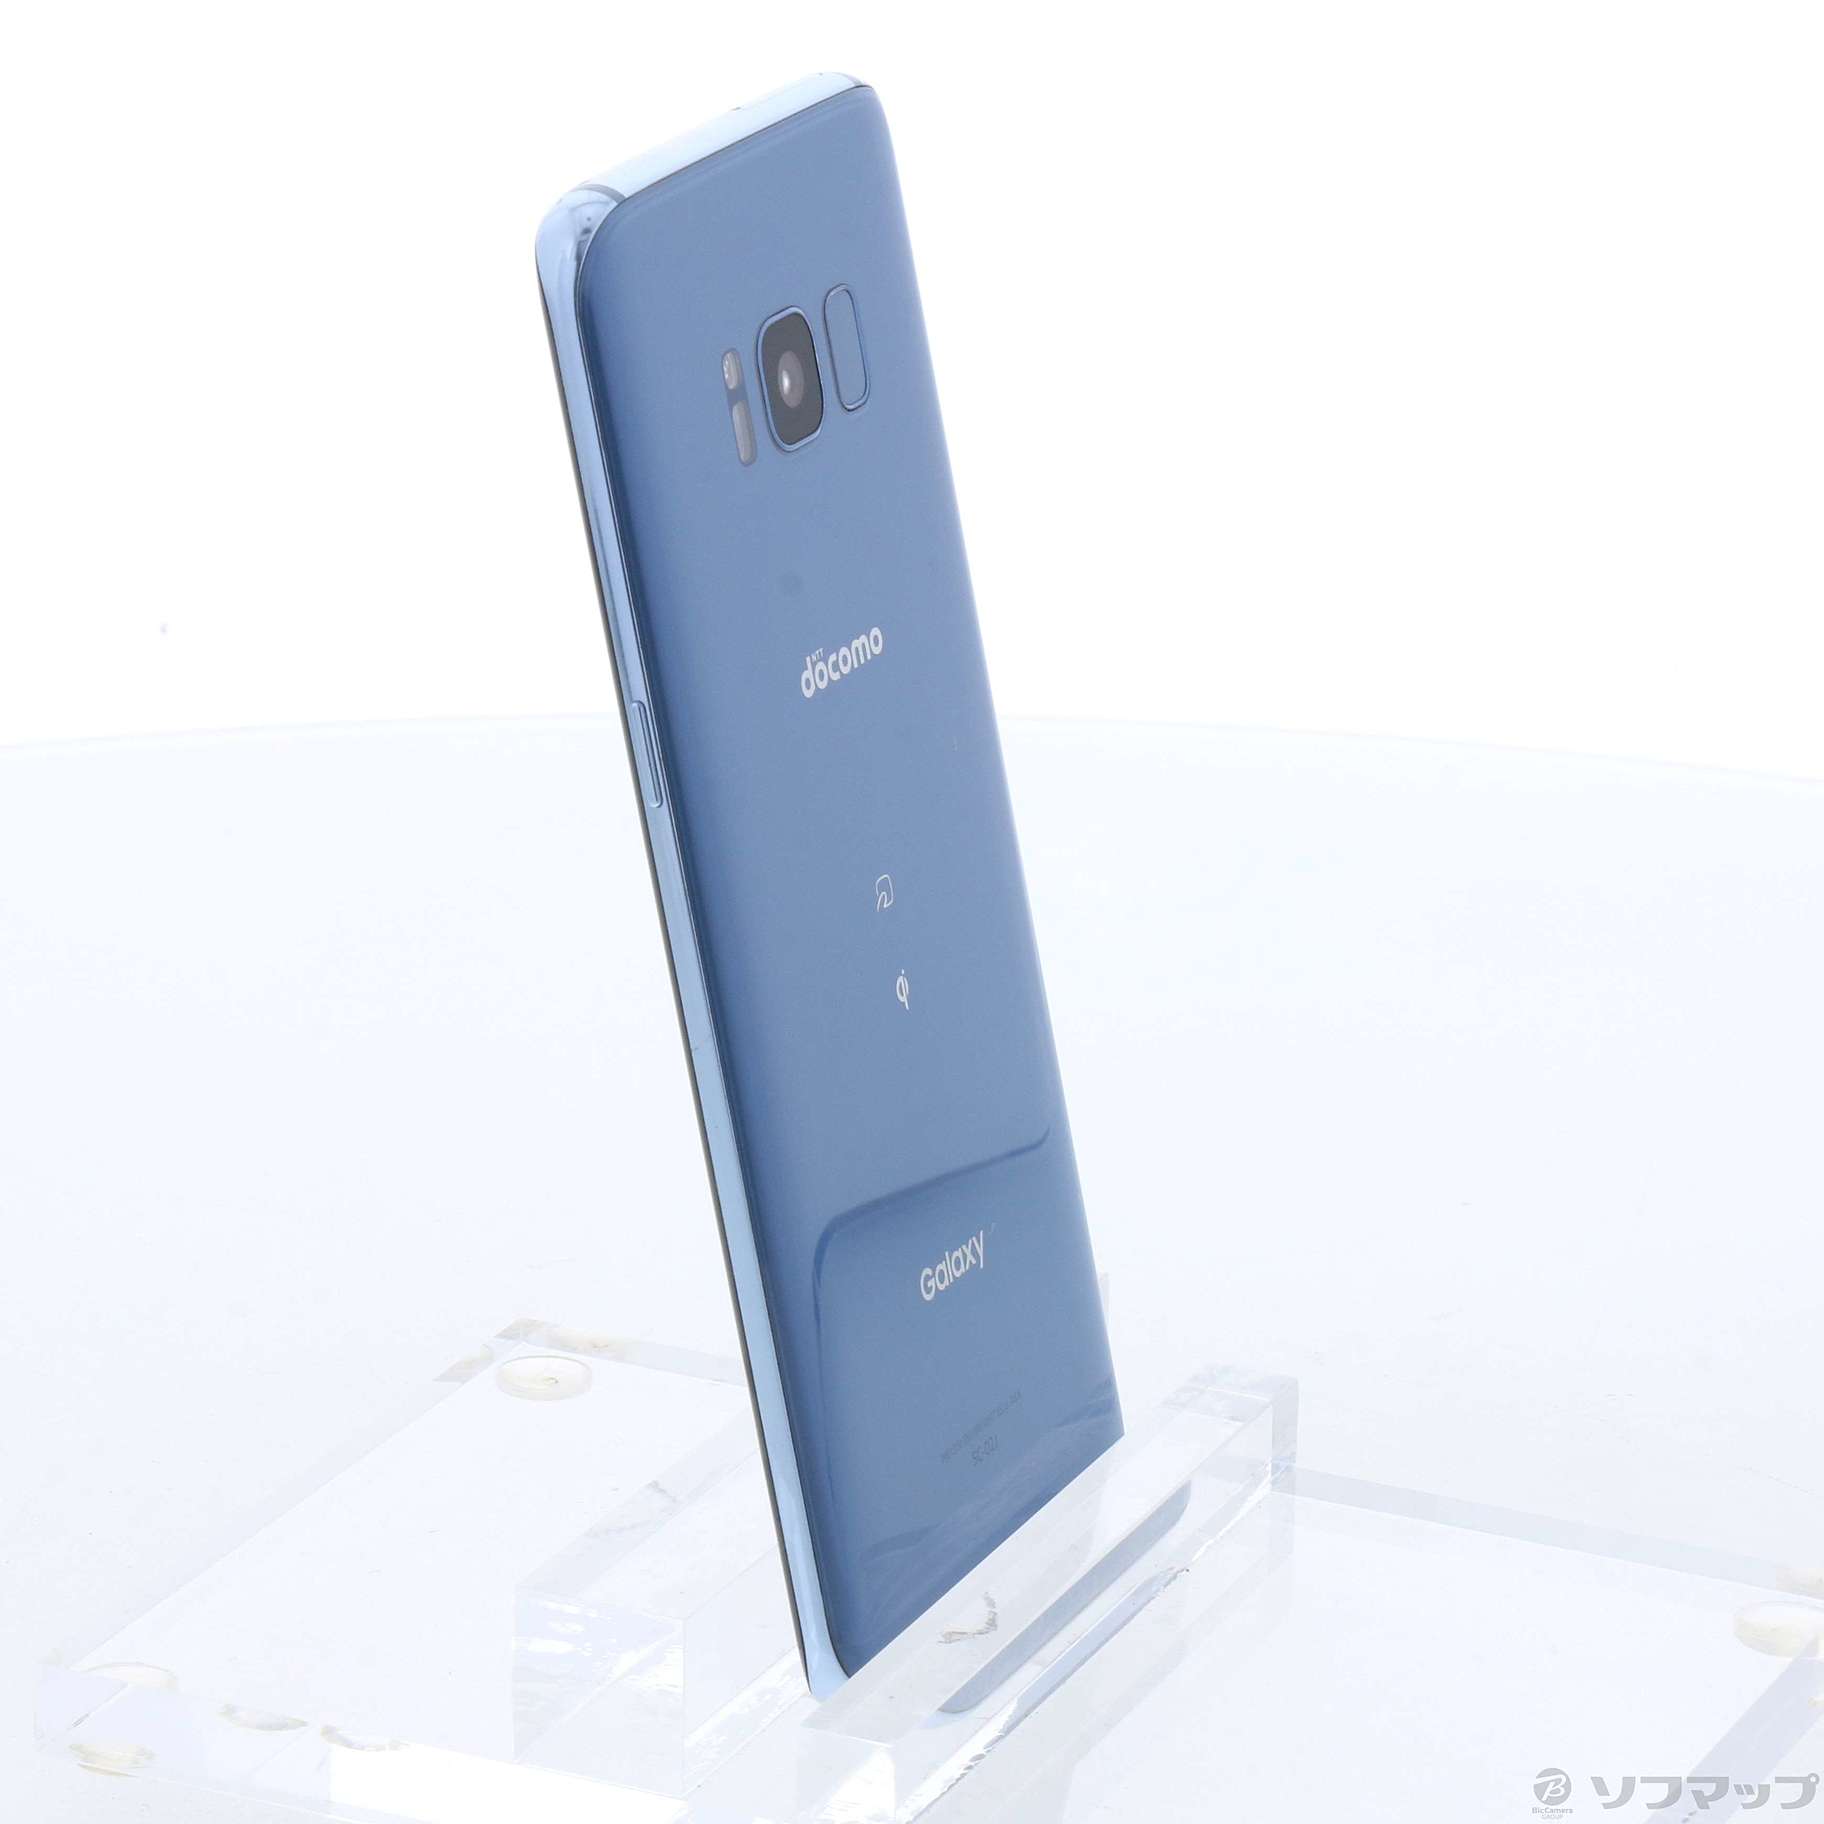 Galaxy S8 Blue 64 GB docomo SIMフリー